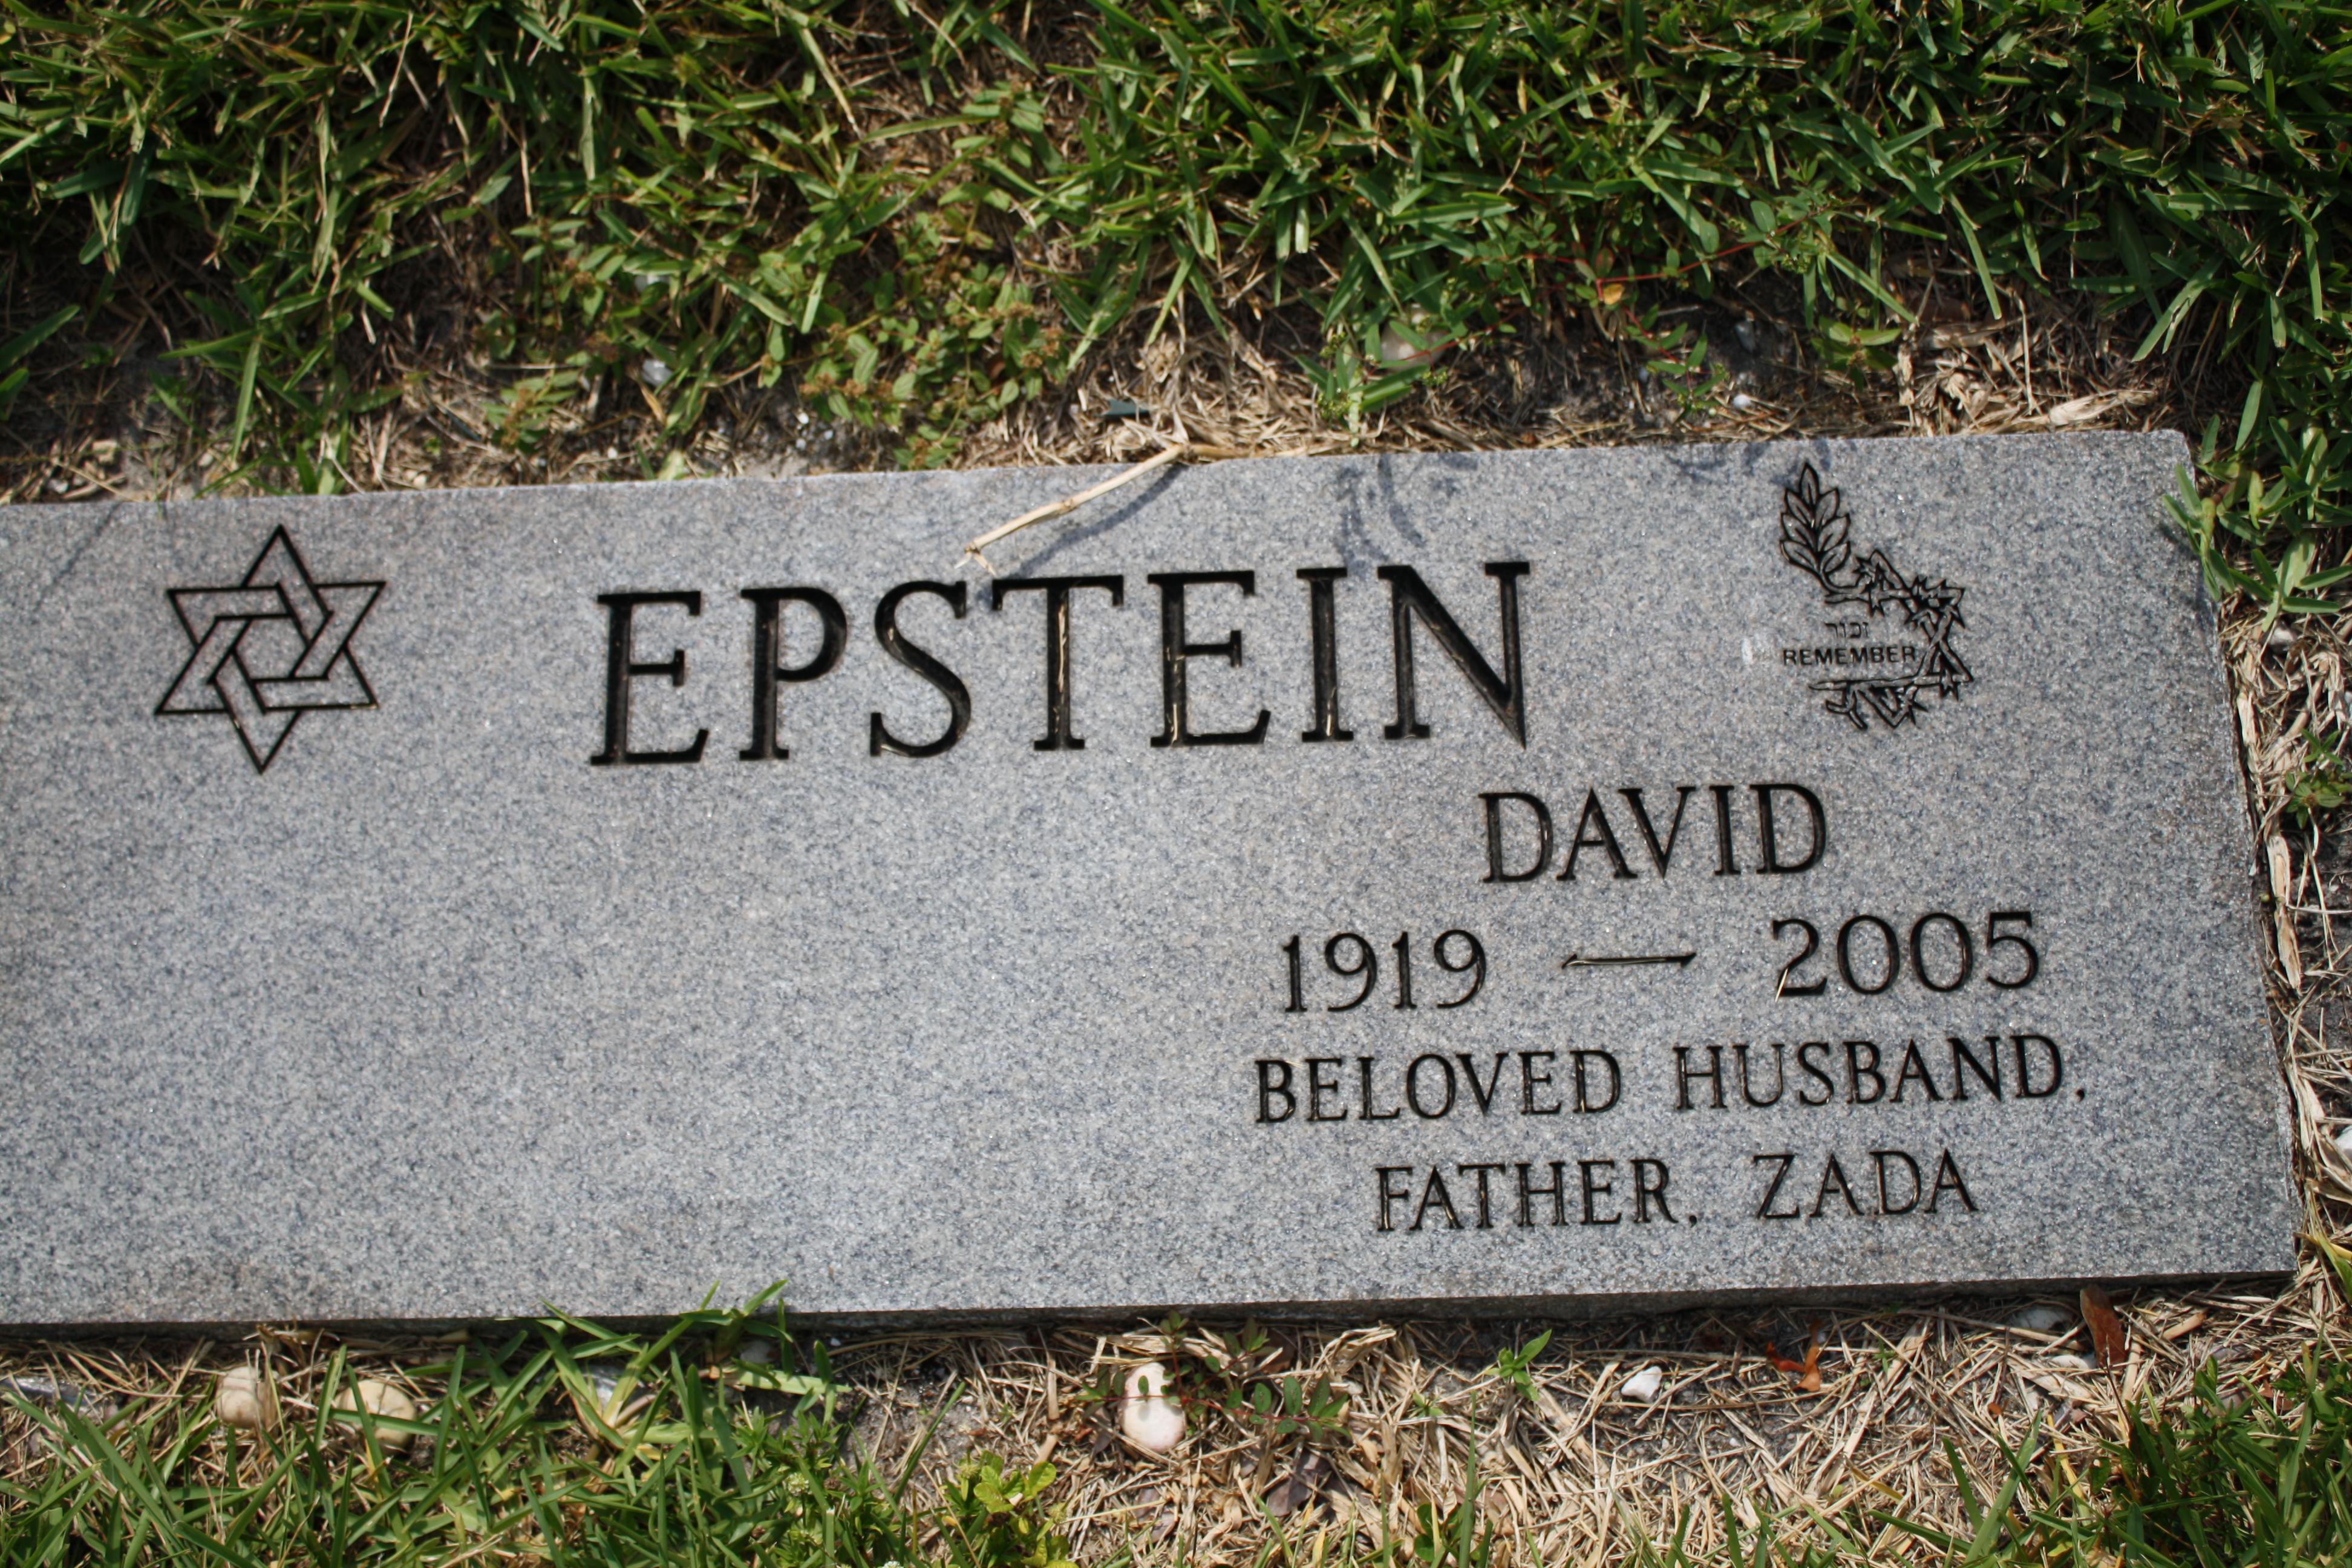 David Epstein